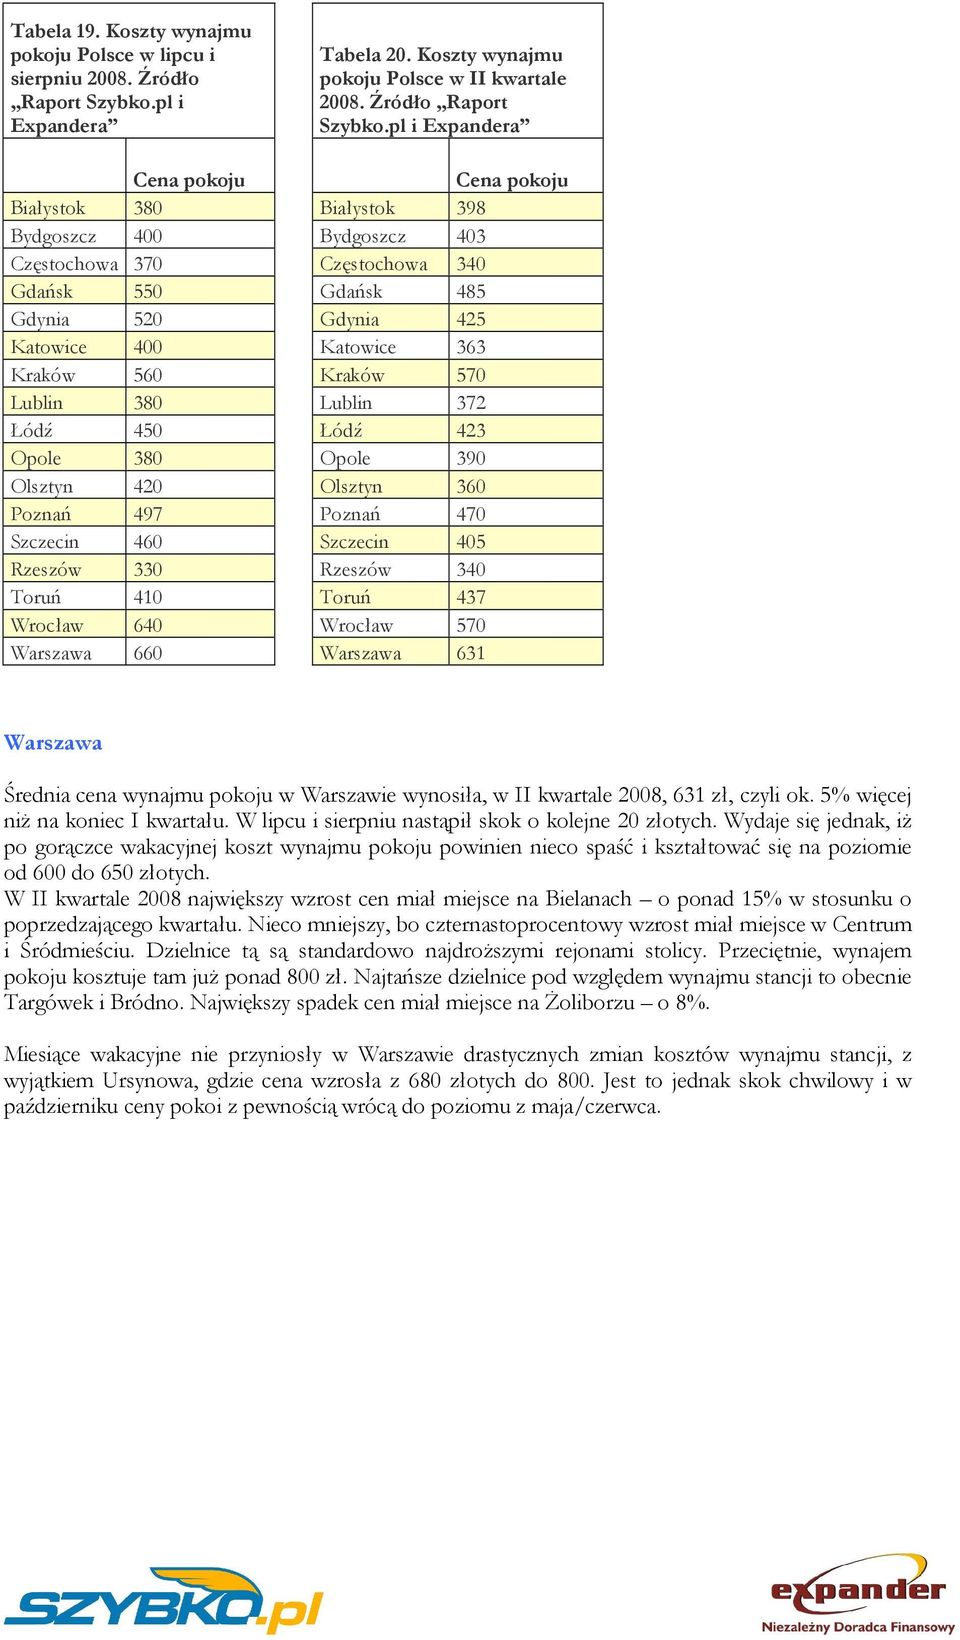 Wrocław 640 Warszawa 660 Tabela 20. Koszty wynajmu Polsce w II kwartale 2008. Źródło Raport Szybko.